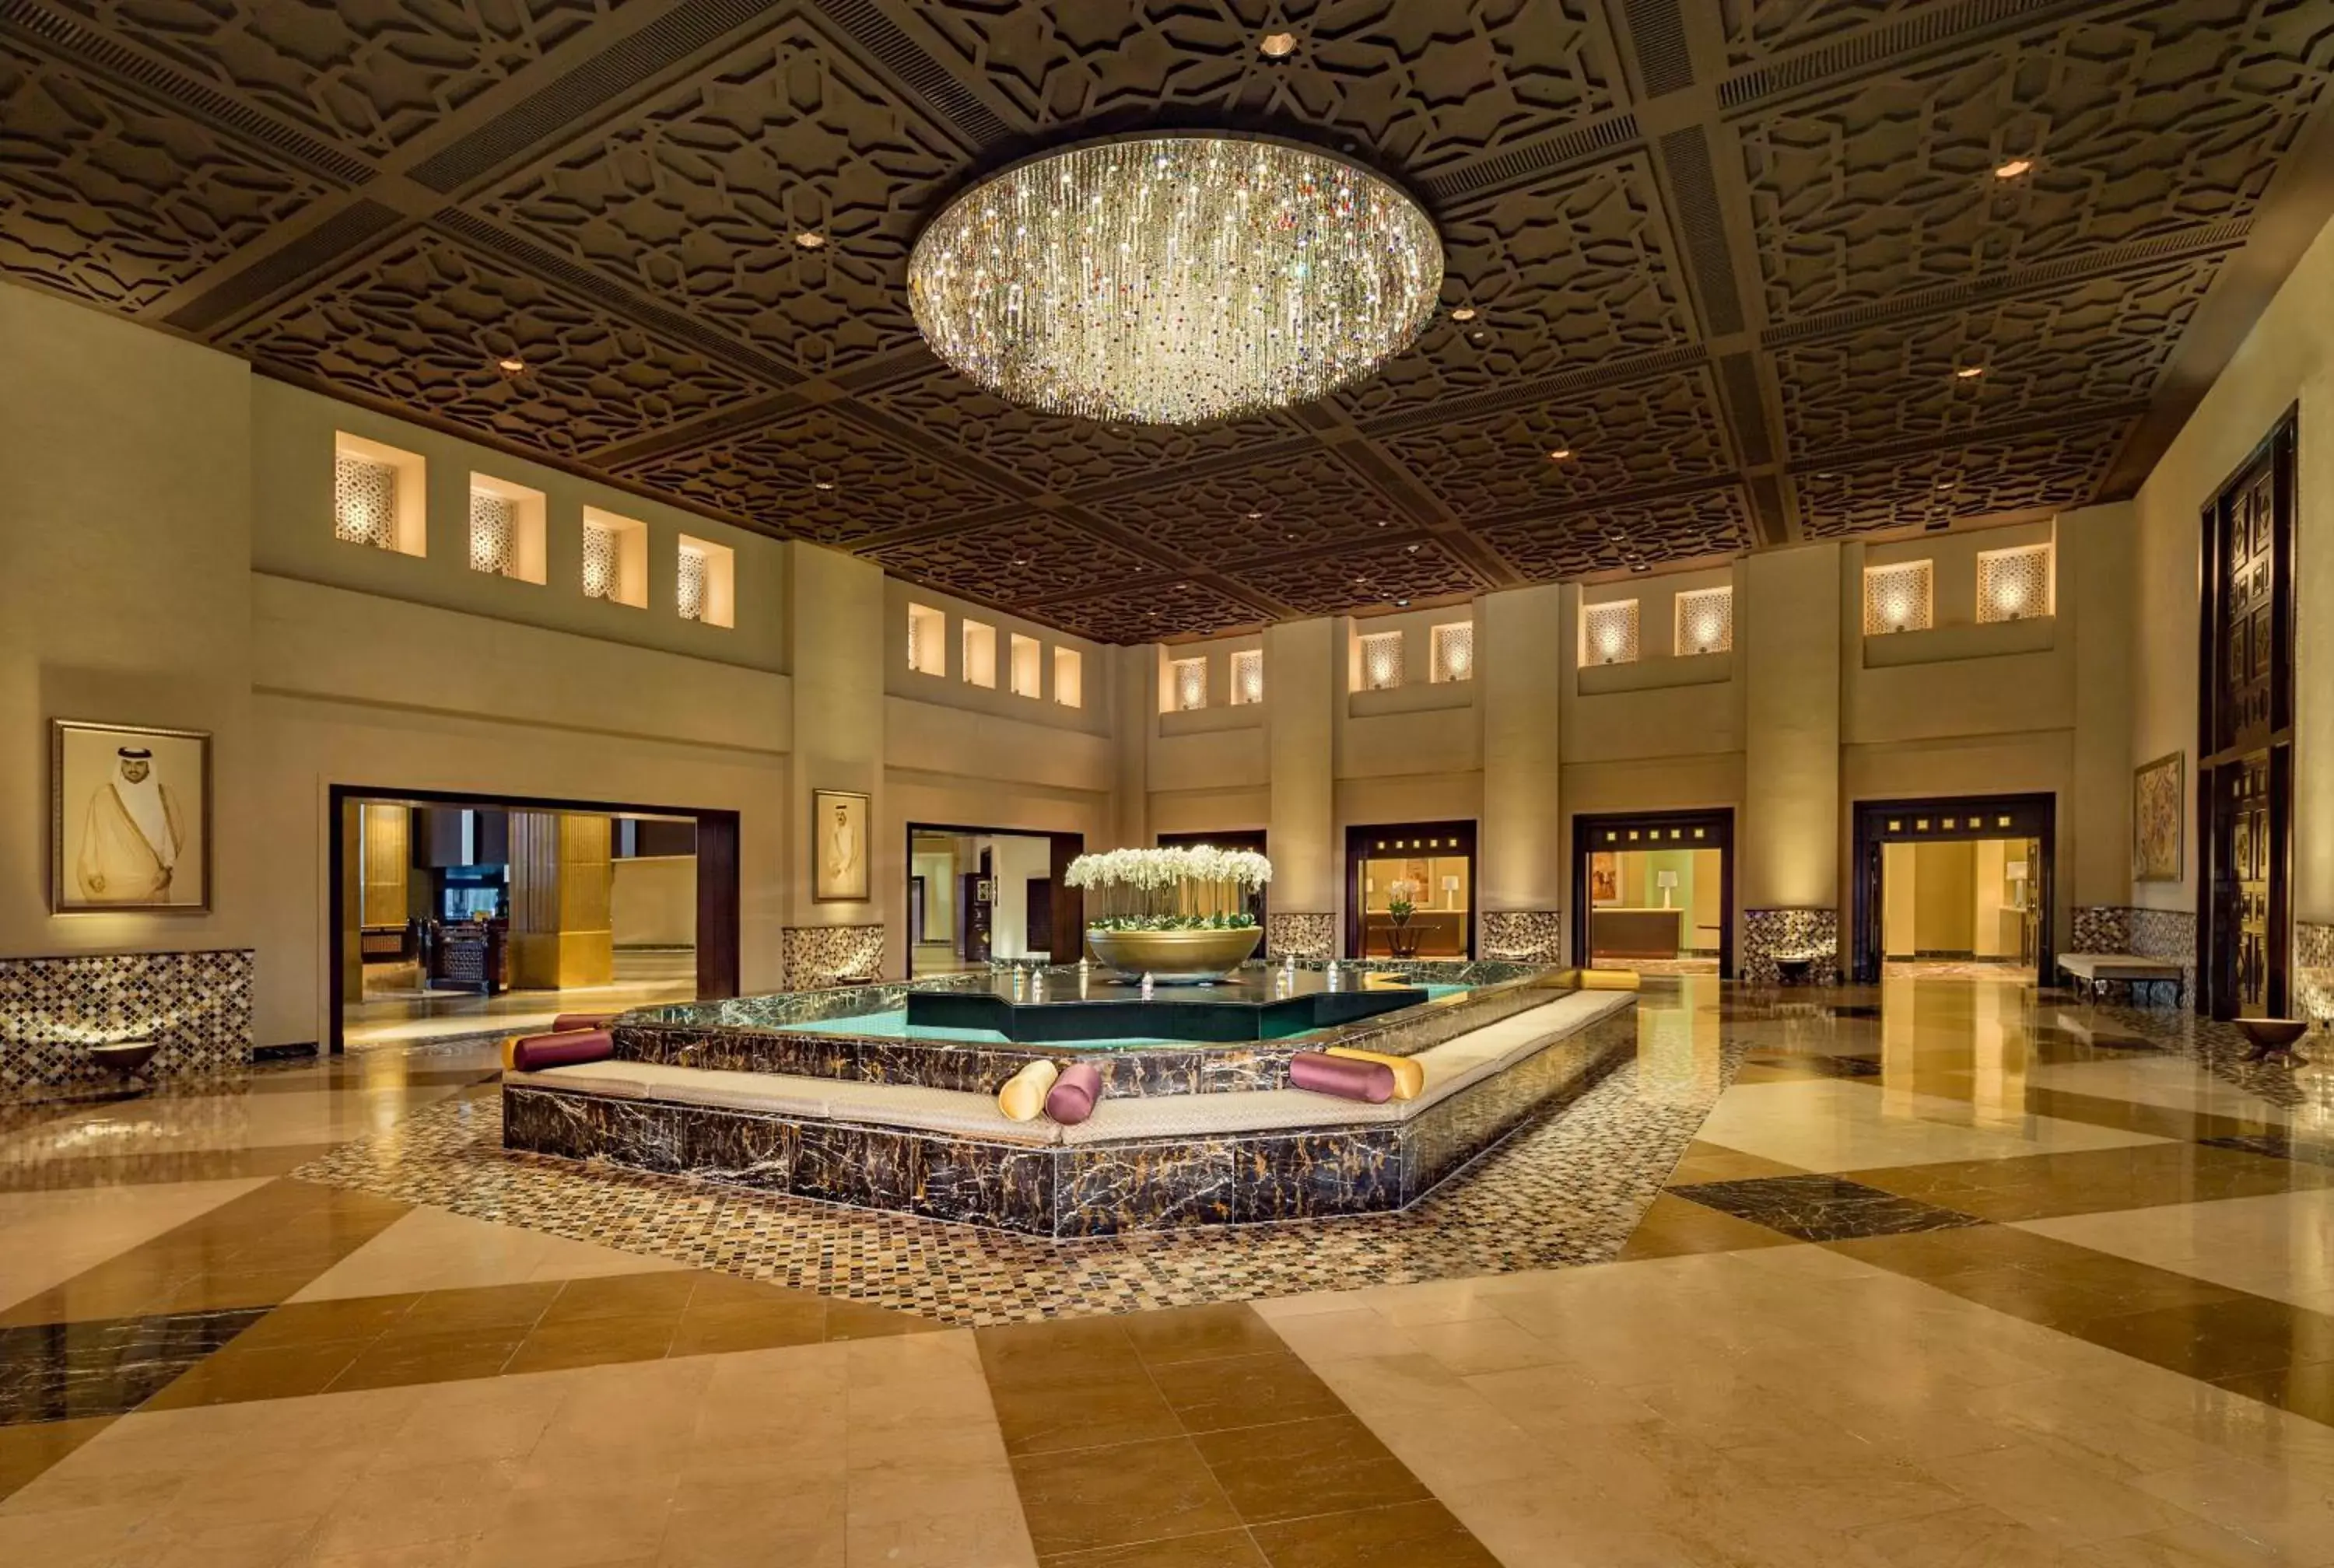 Lobby or reception in Grand Hyatt Doha Hotel & Villas